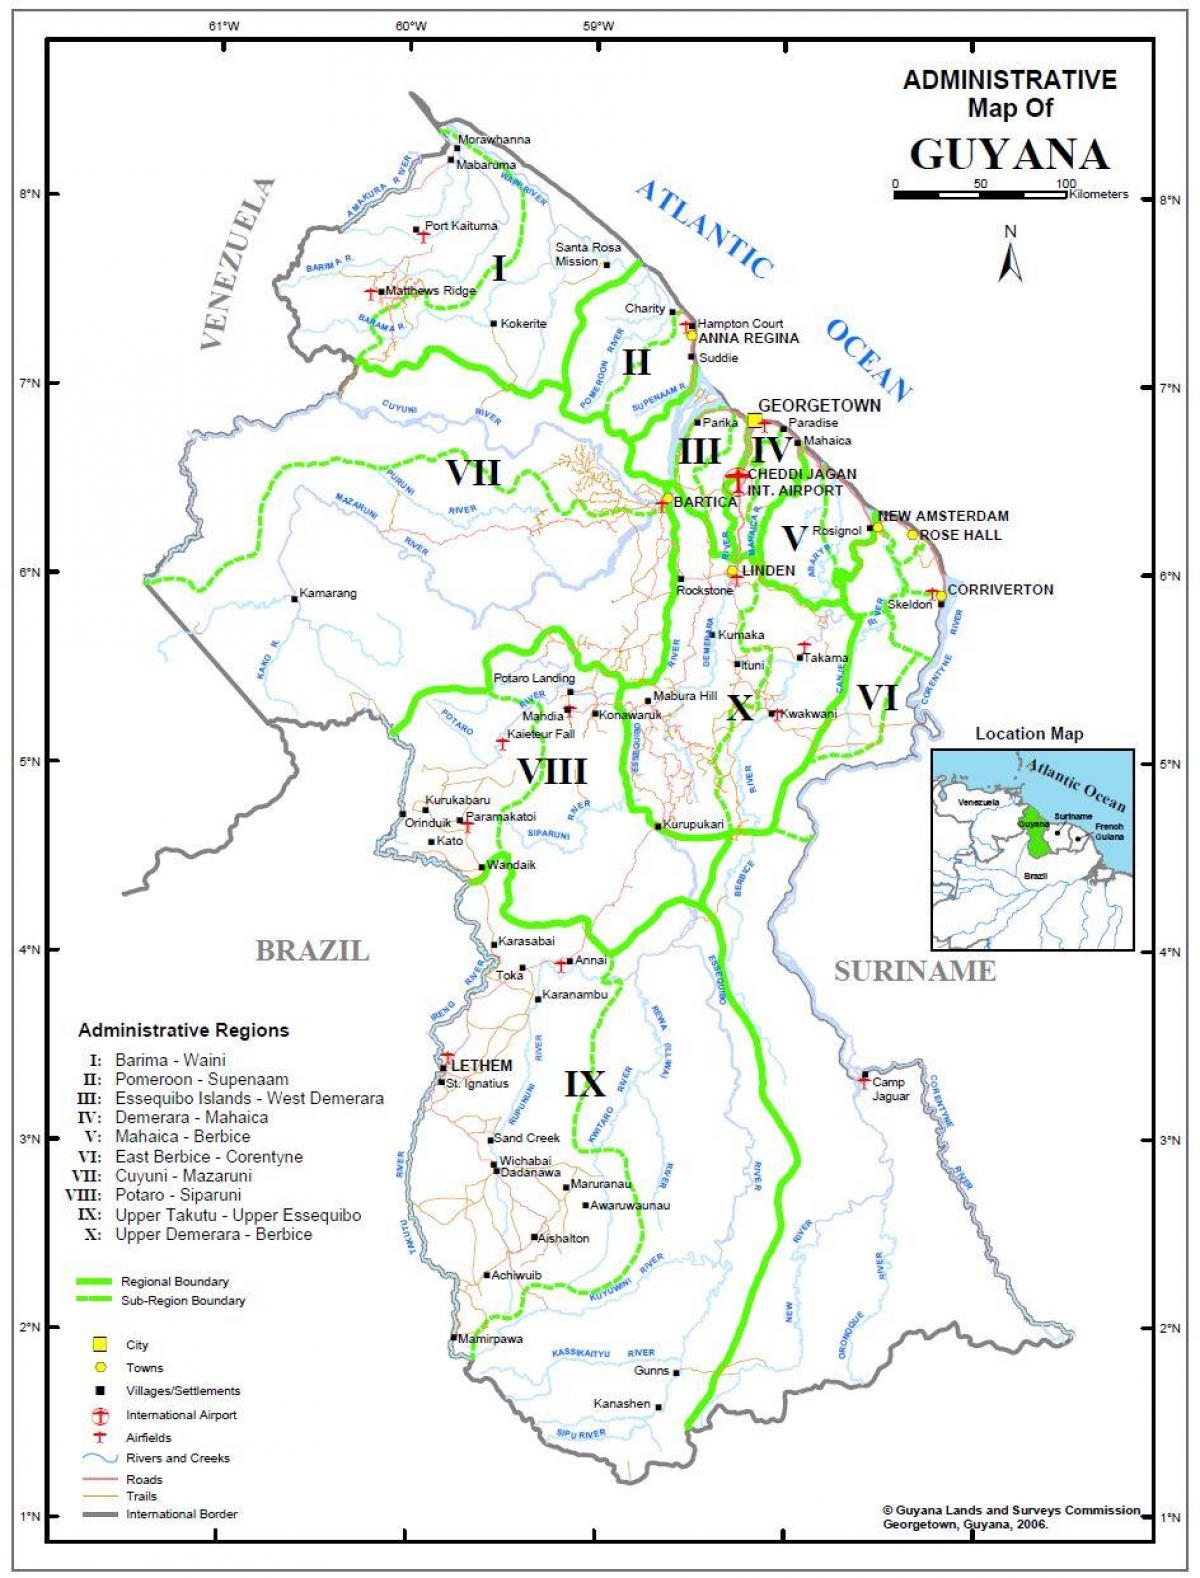 harta e Guajana treguar dhjetë rajone administrative